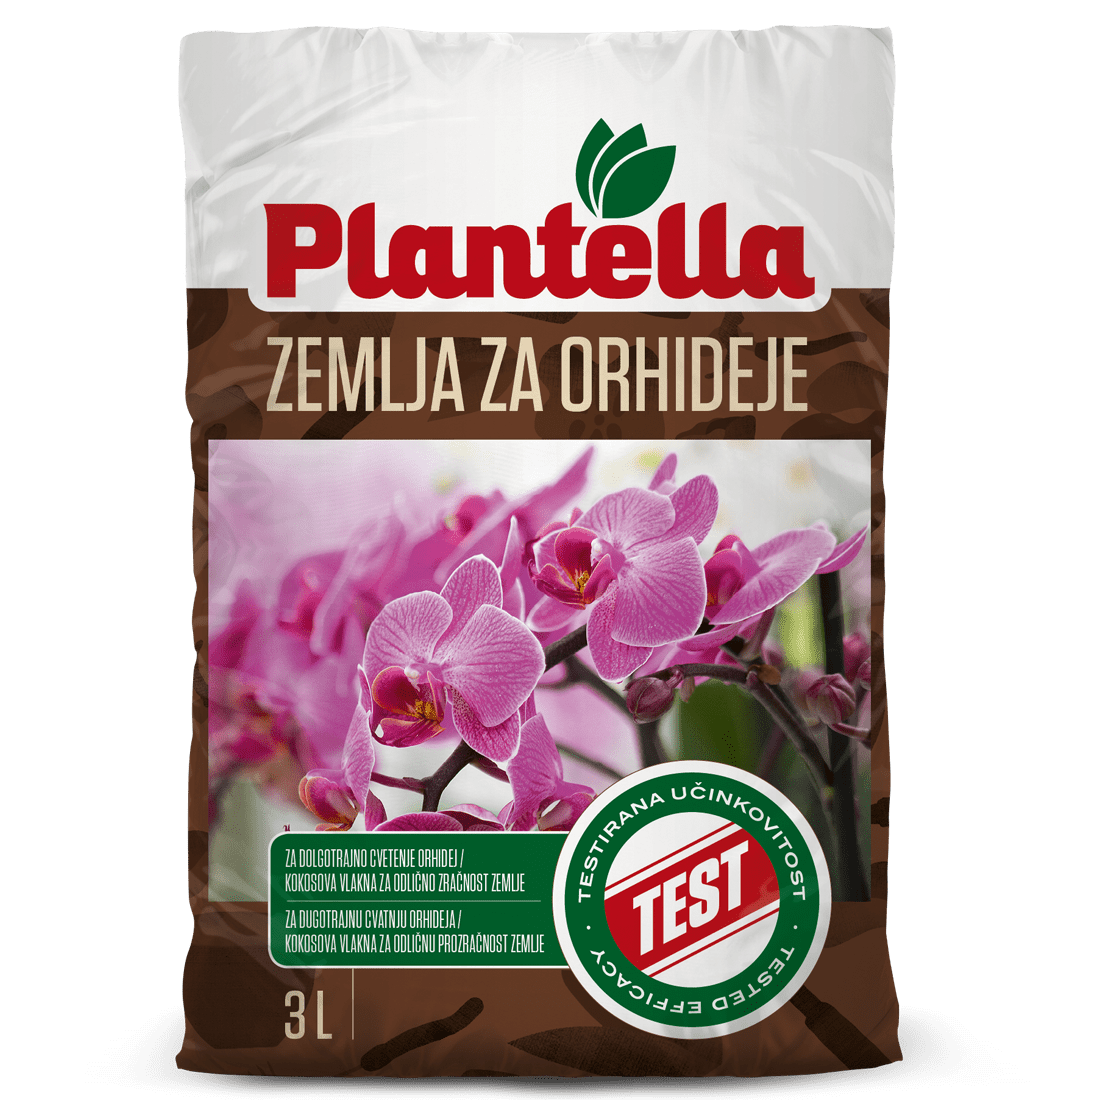 Plantella supstrat za orhideje 3l